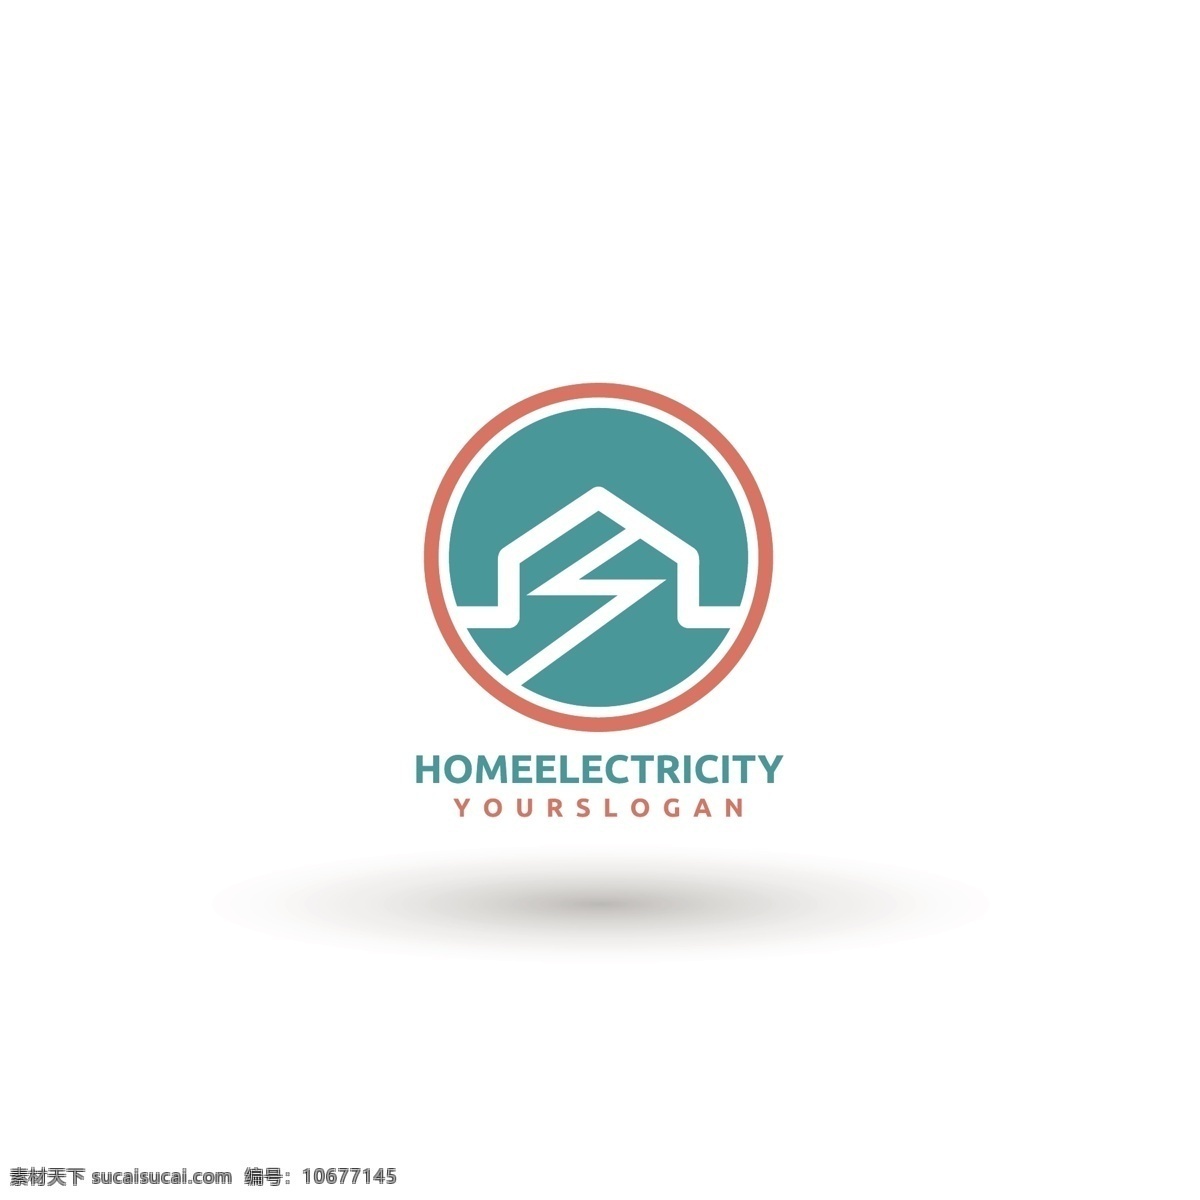 家庭 电 标志 logo 模板 家庭电 房子 圆形 扁平风格 logo模板